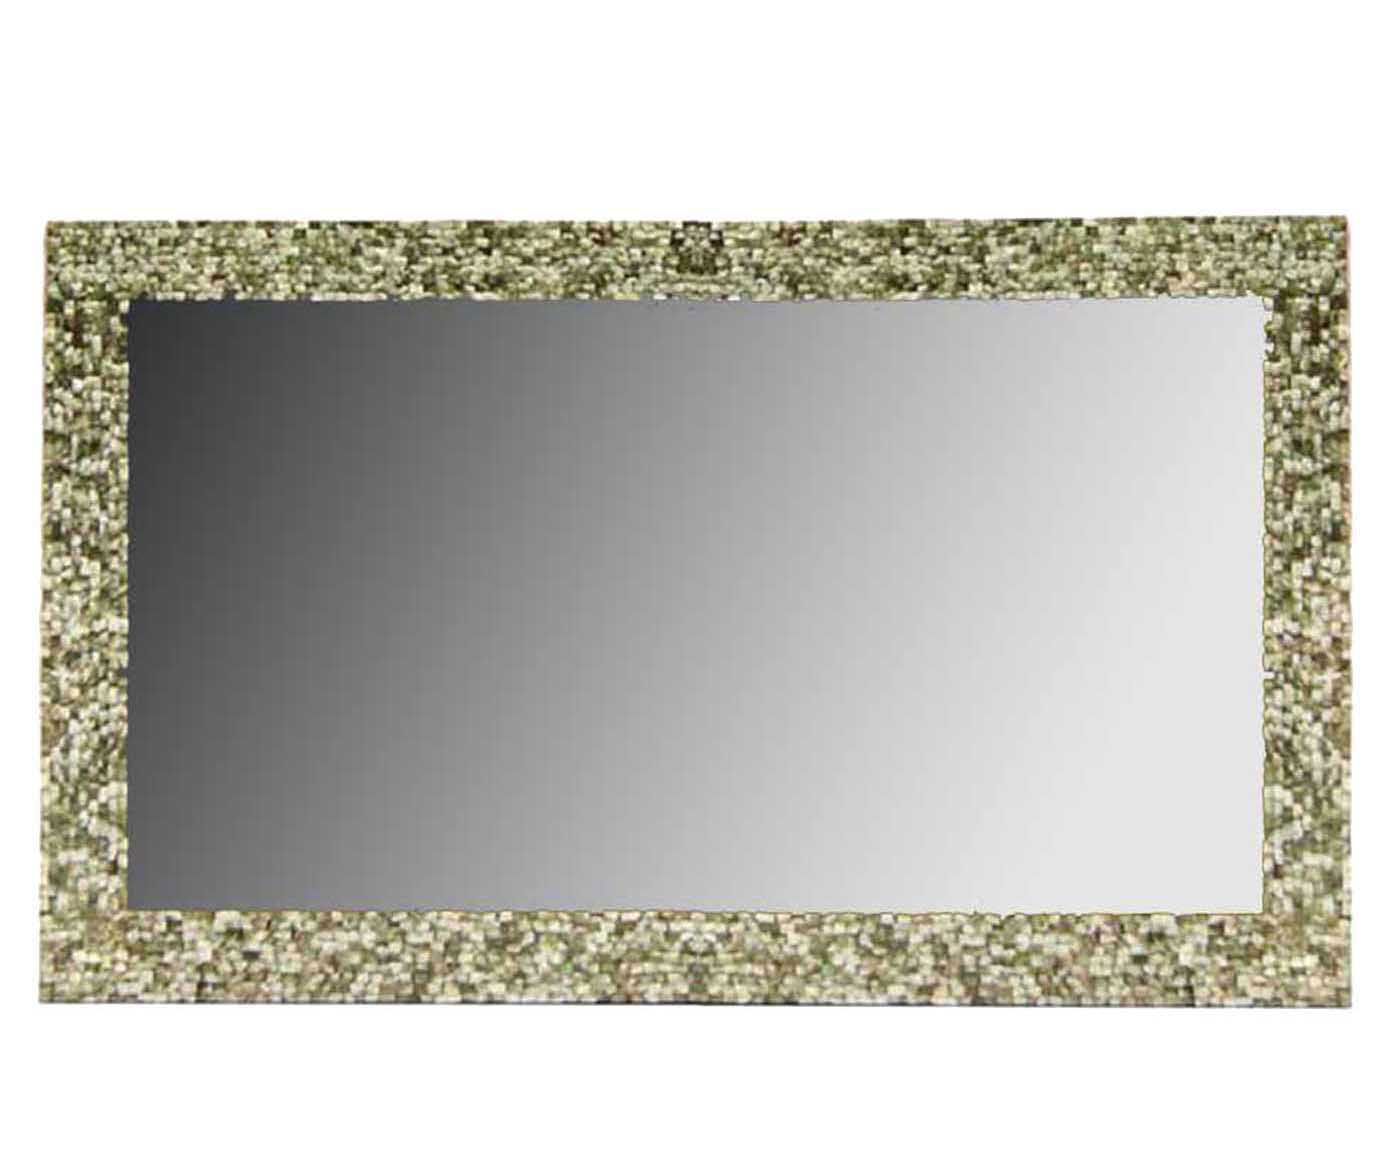 Moldura para espelho elegance refine | Westwing.com.br